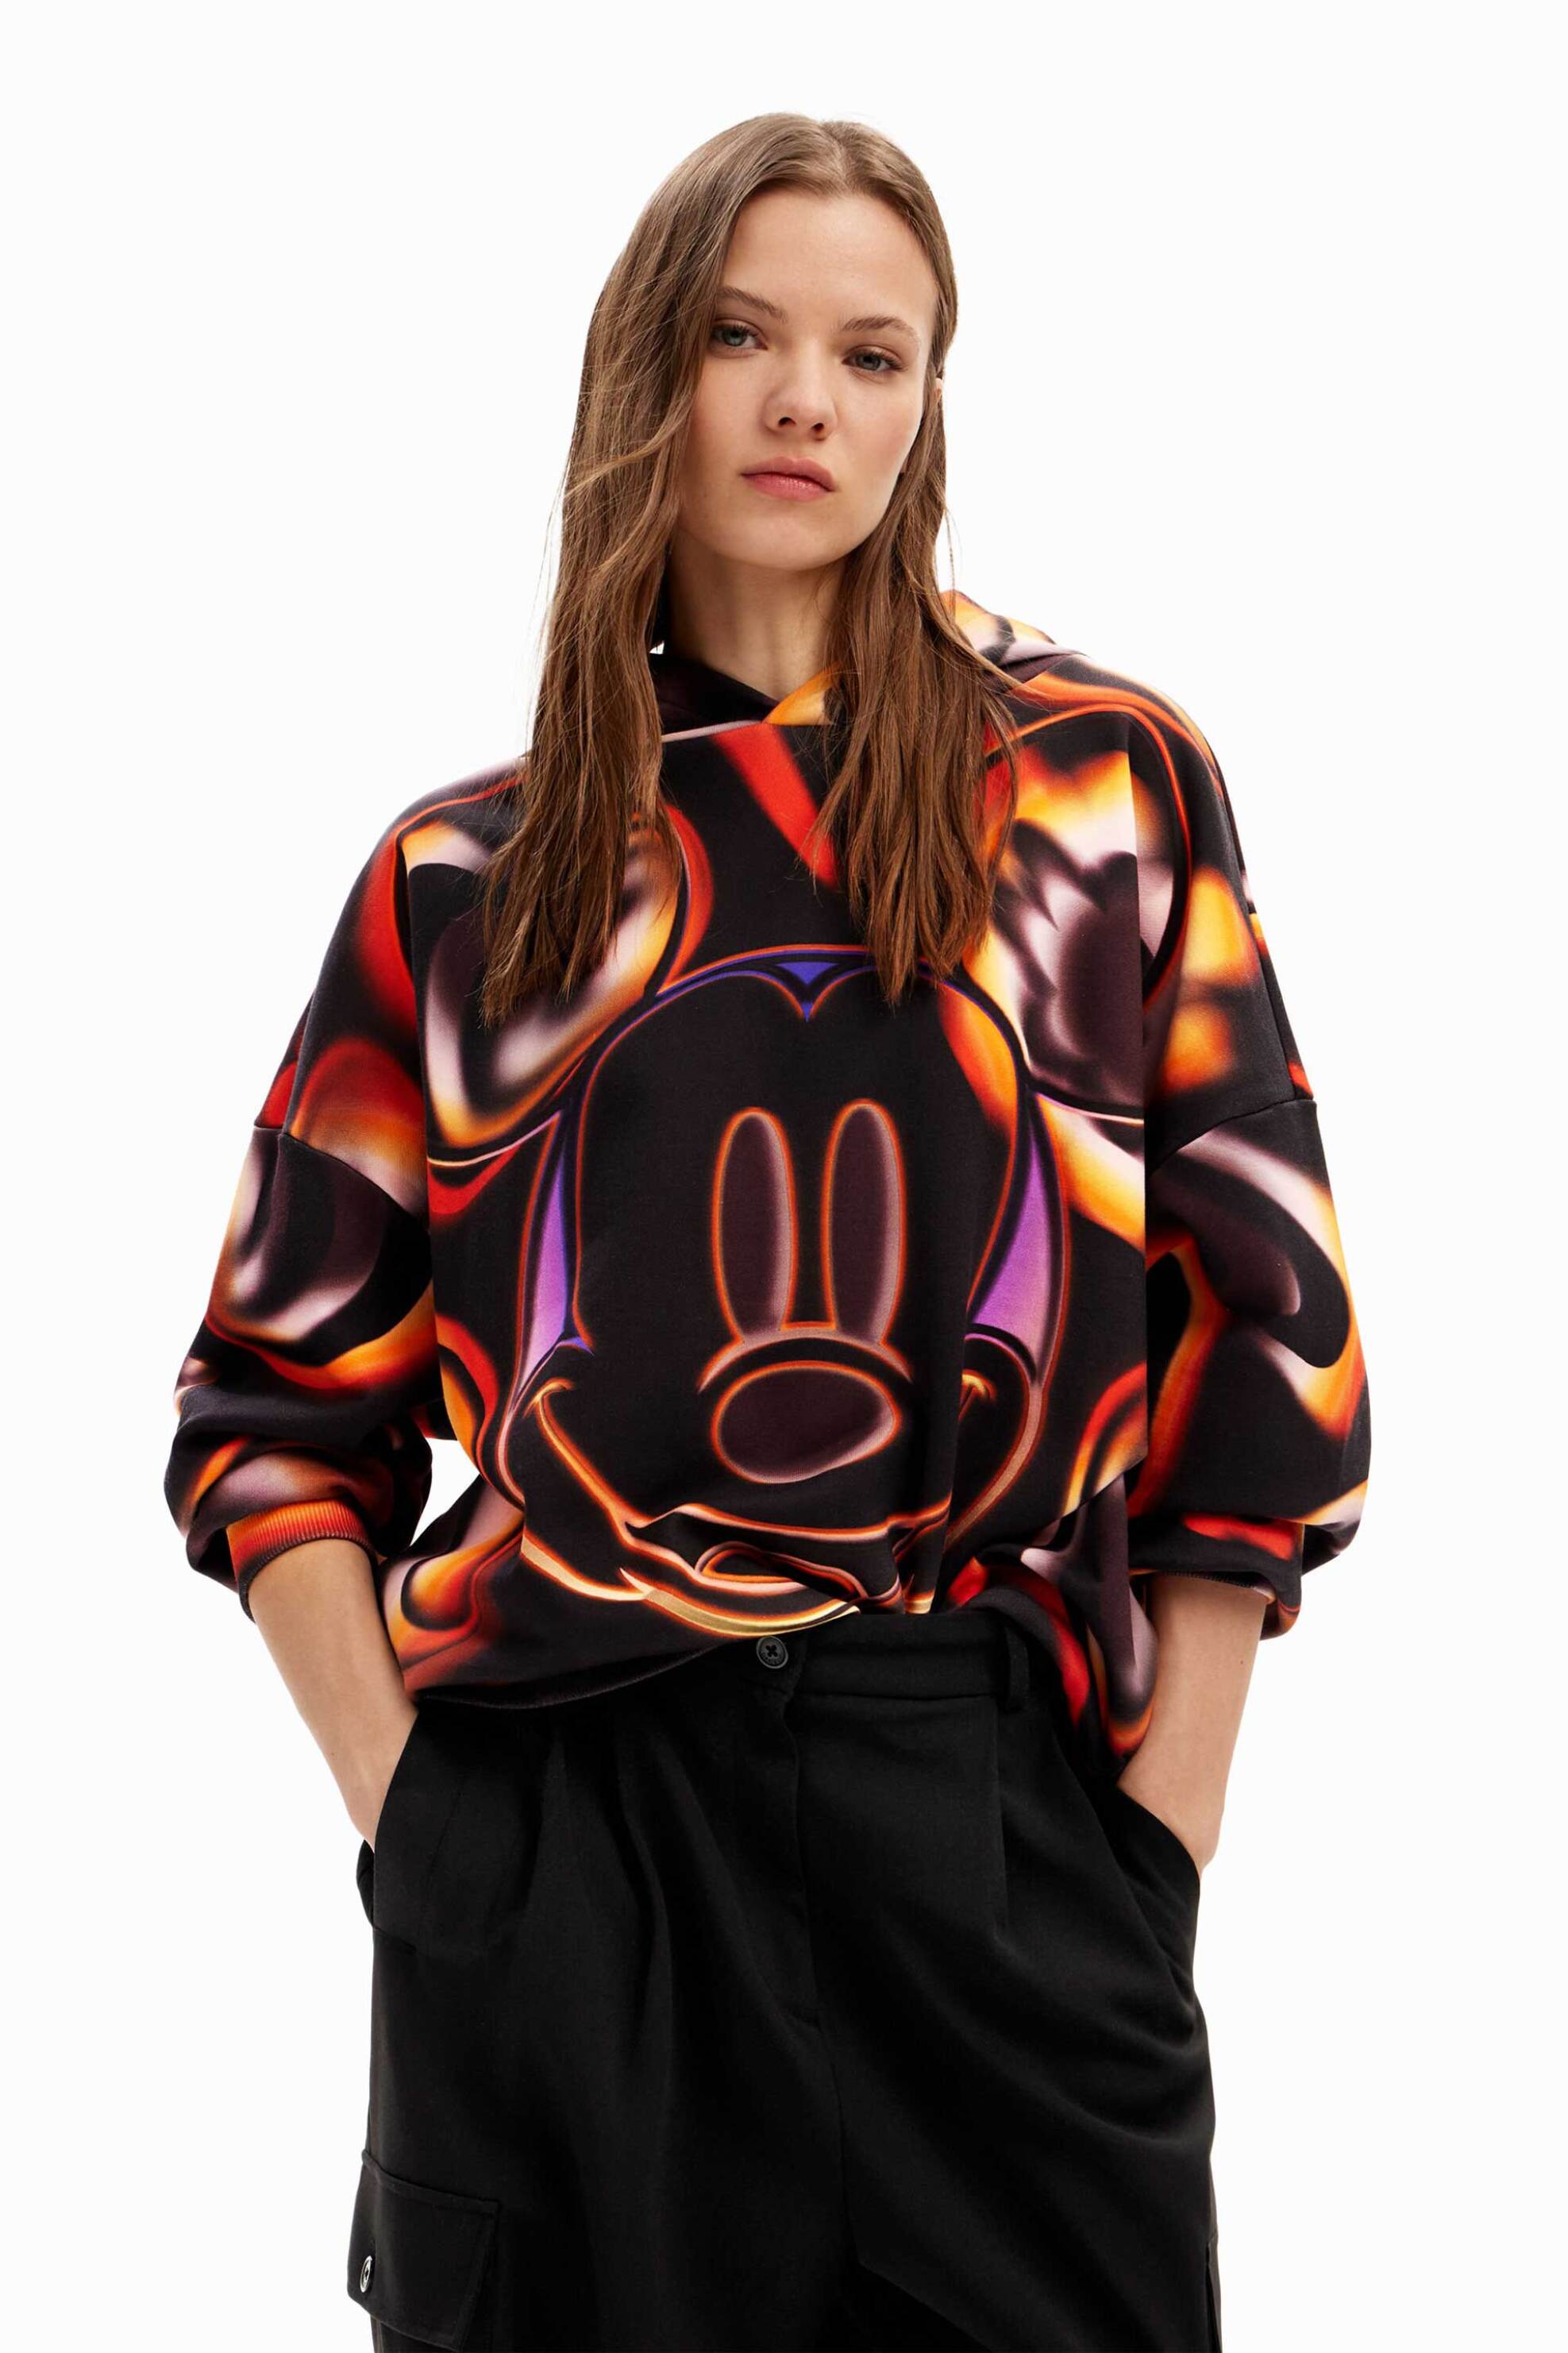 Γυναικεία Ρούχα & Αξεσουάρ > Γυναικεία Ρούχα > Γυναικεία Φούτερ Desigual γυναικεία βαμβακερή μπλούζα φούτερ με all-over distorded digital Mickey Mouse print "Mickeyto" - 24SWSK08 Μαύρο